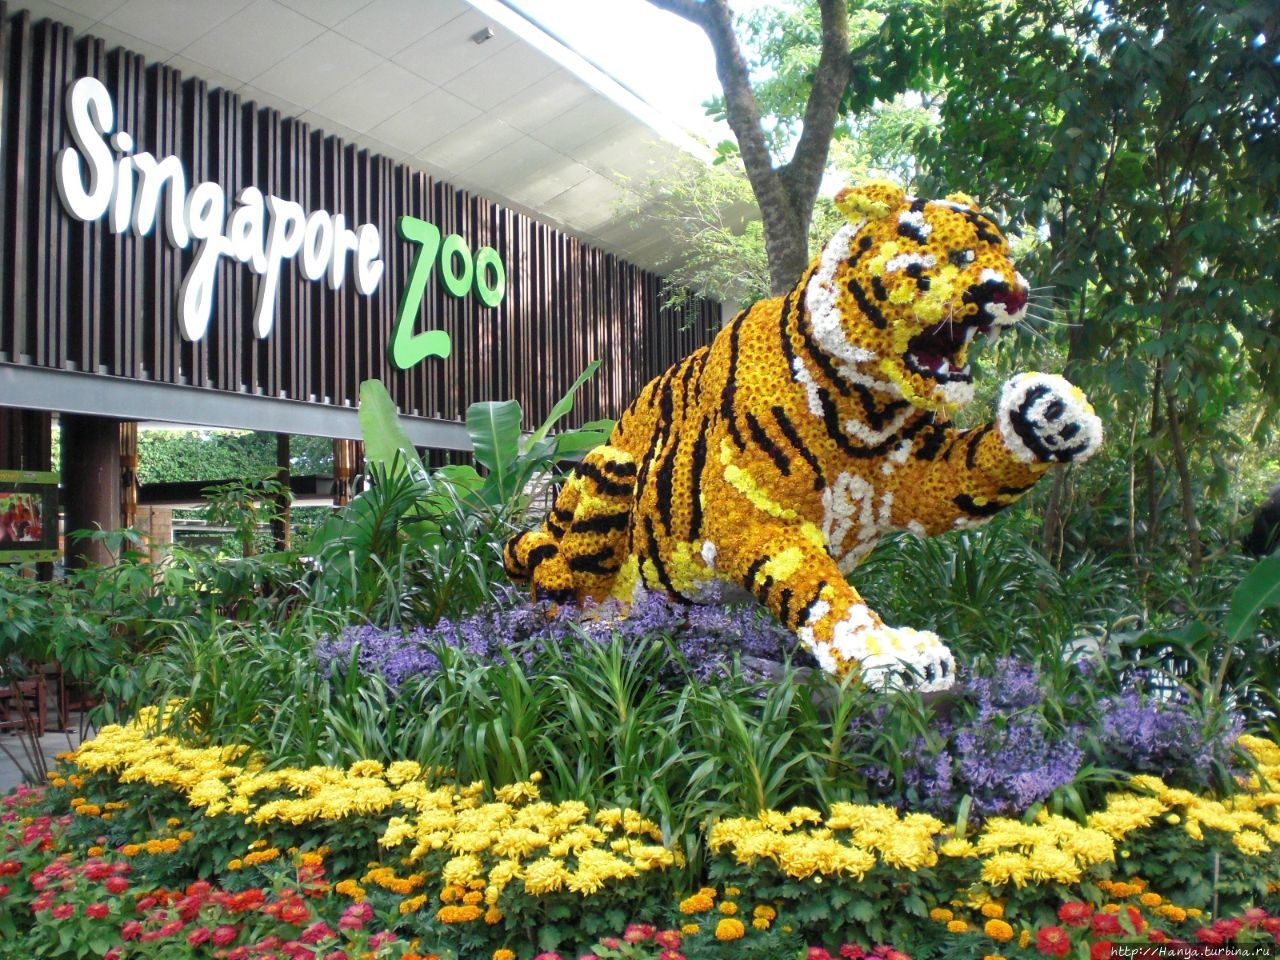 Сингапурский Зоопарк Мандай / Singapore Zoo Mandai